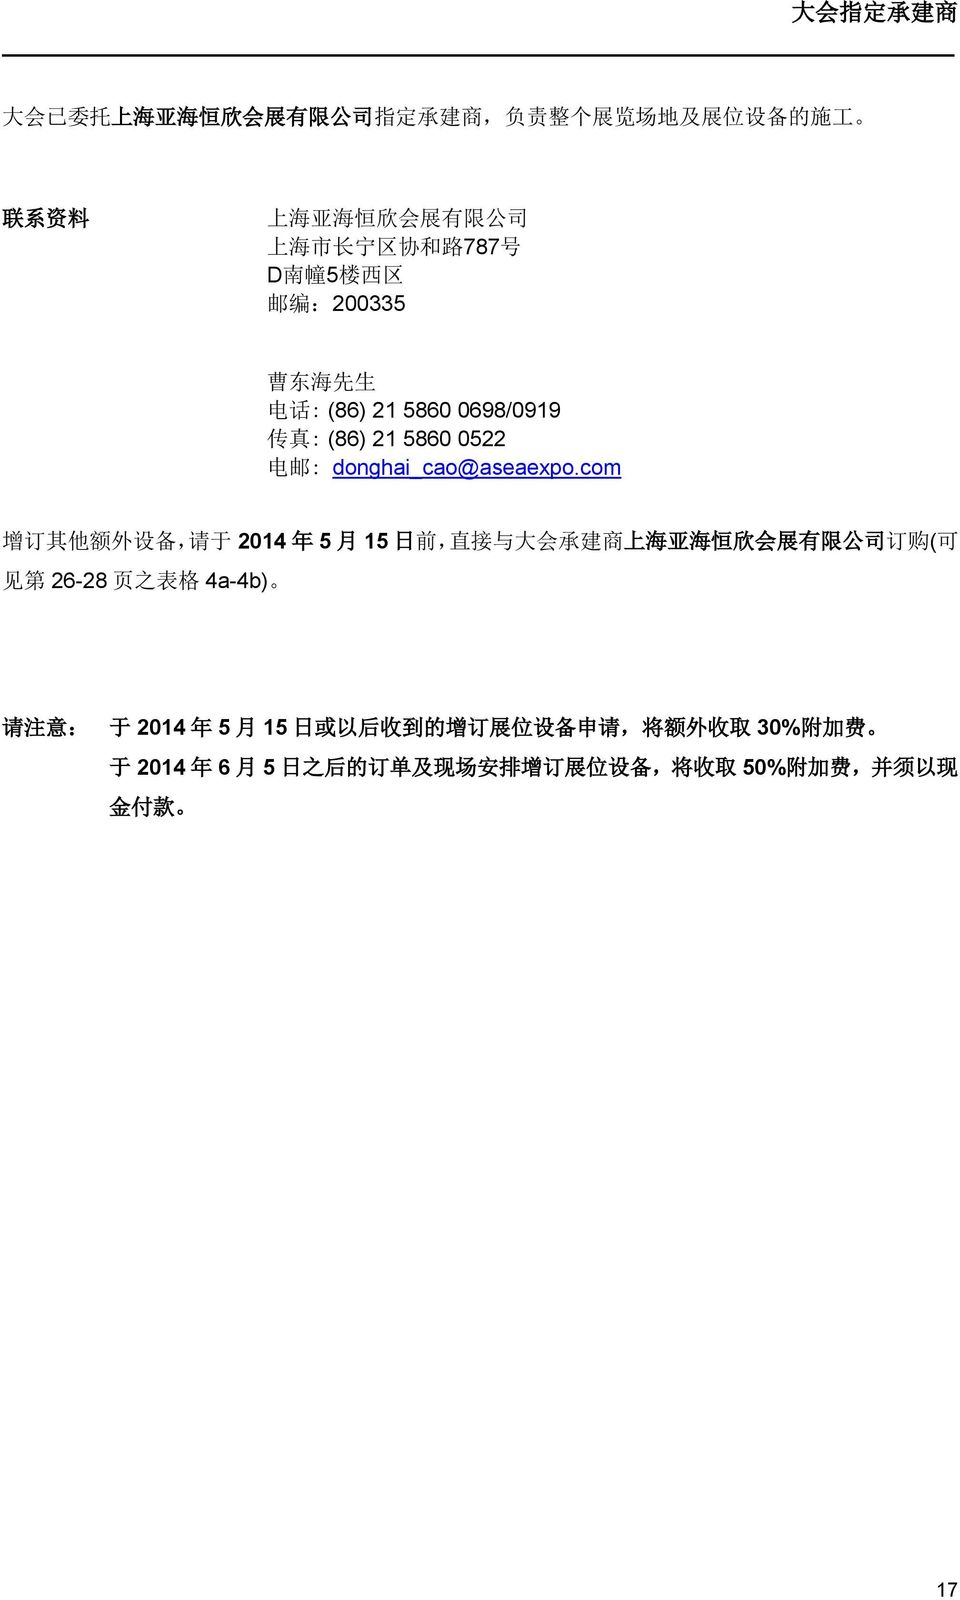 com 增 订 其 他 额 外 设 备, 请 于 2014 年 5 月 15 日 前, 直 接 与 大 会 承 建 商 上 海 亚 海 恒 欣 会 展 有 限 公 司 订 购 ( 可 见 第 26-28 页 之 表 格 4a-4b) 请 注 意 : 于 2014 年